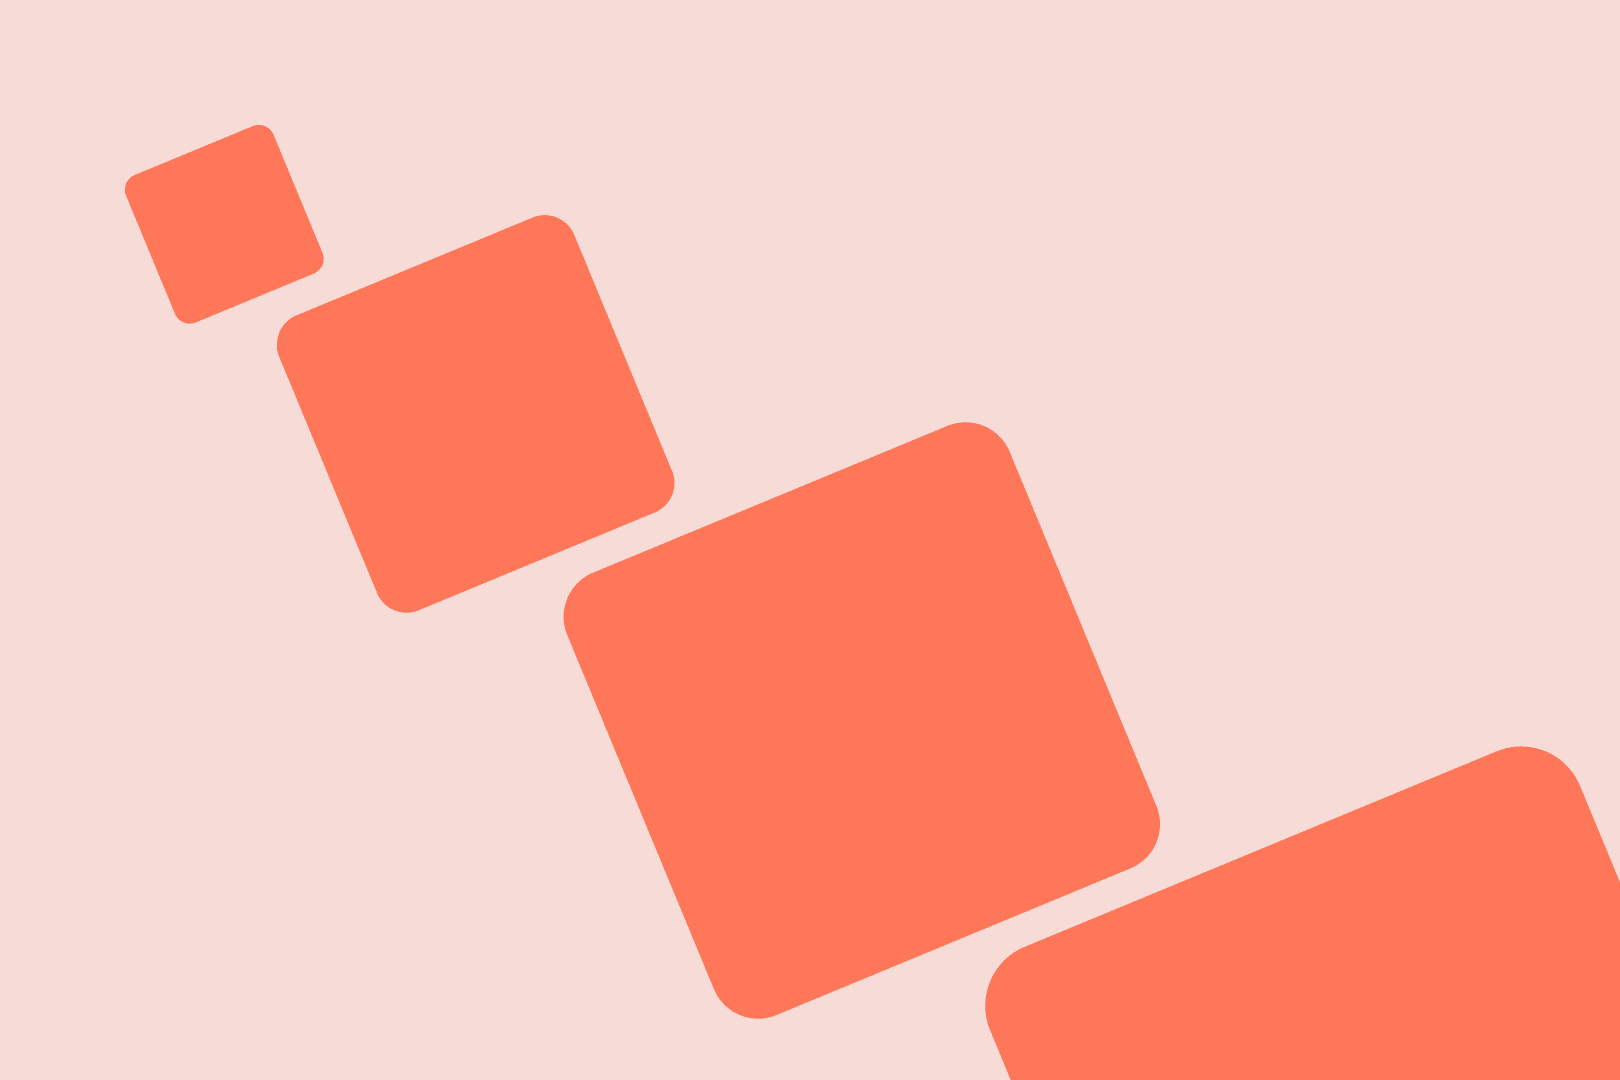 Orange boxes